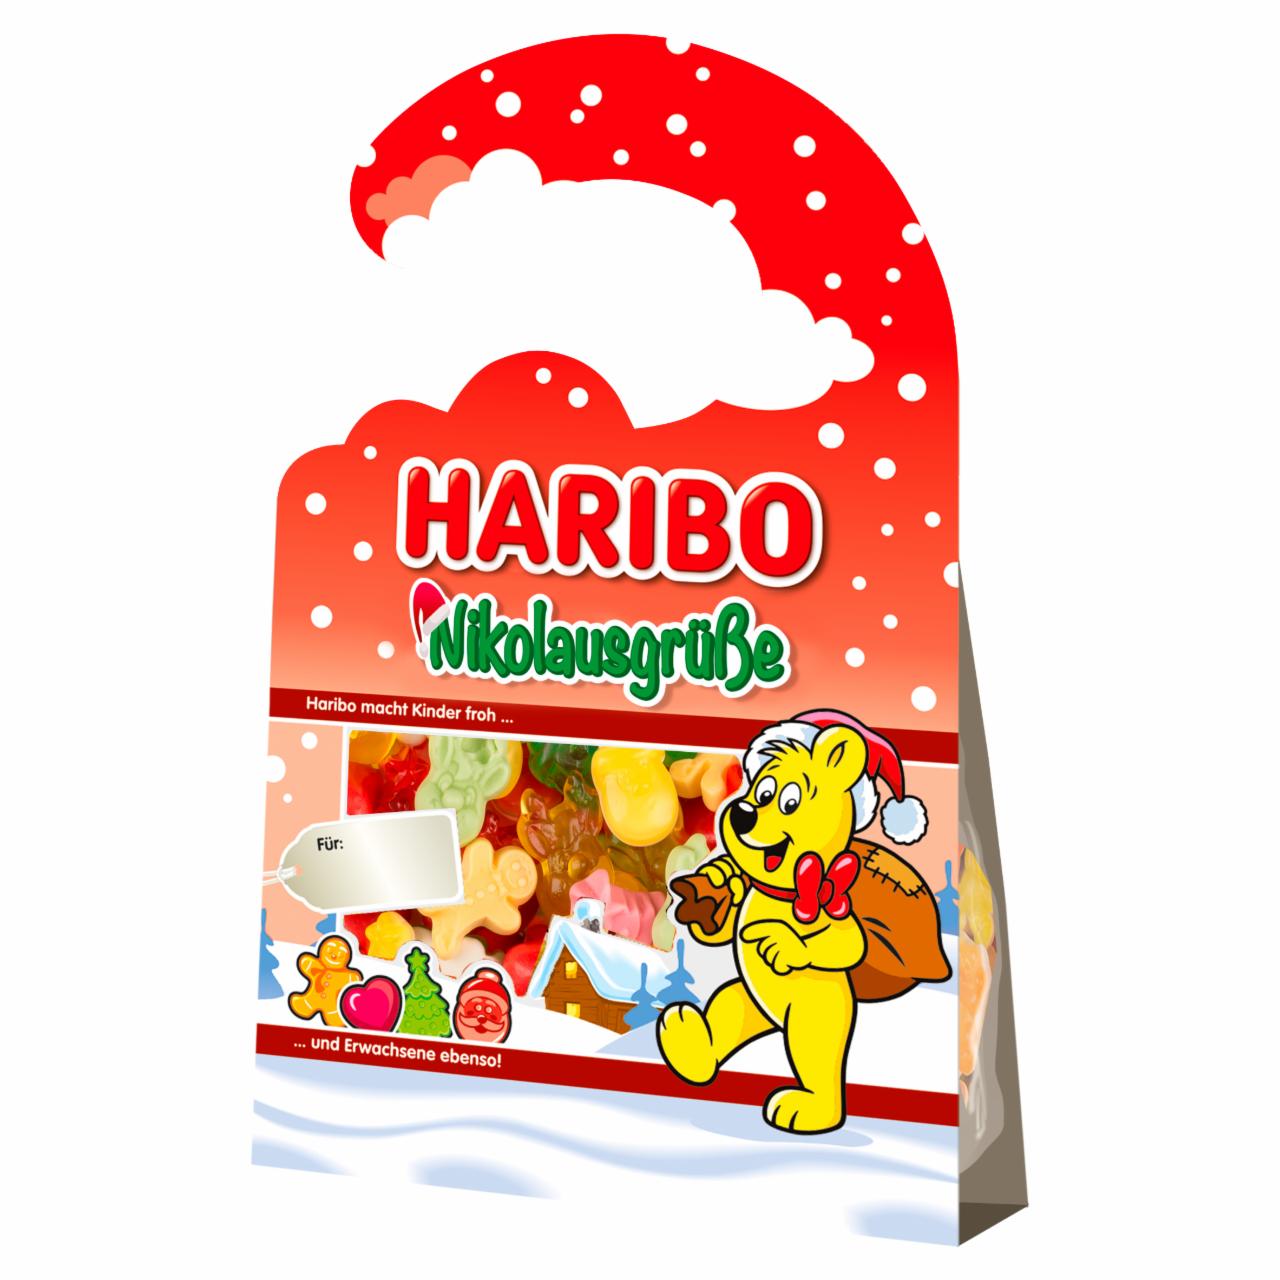 Képek - Haribo Nikolausgrüße gyümölcsízű gumicukorka 100 g